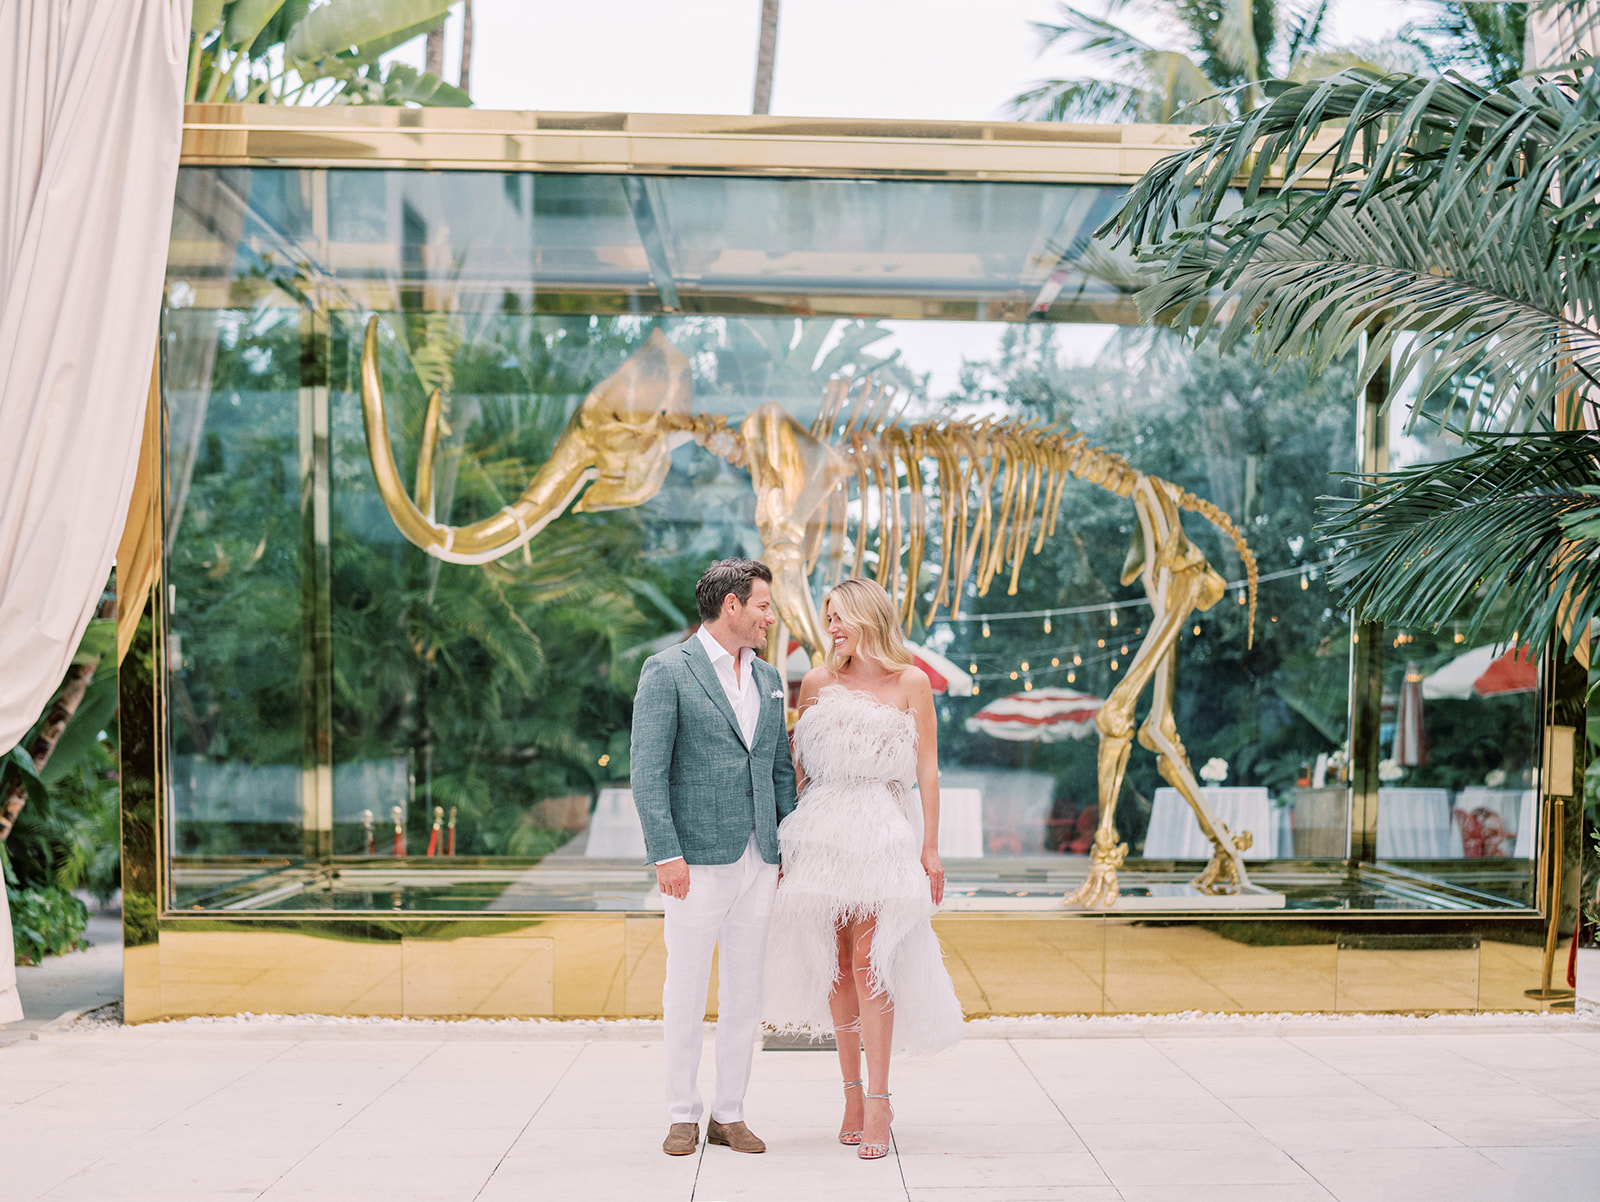 Faena Hotel Wedding, Faena Miami Wedding, Miami Beach Wedding, Miami Wedding Photographer, Faena Weddings, Miami Wedding